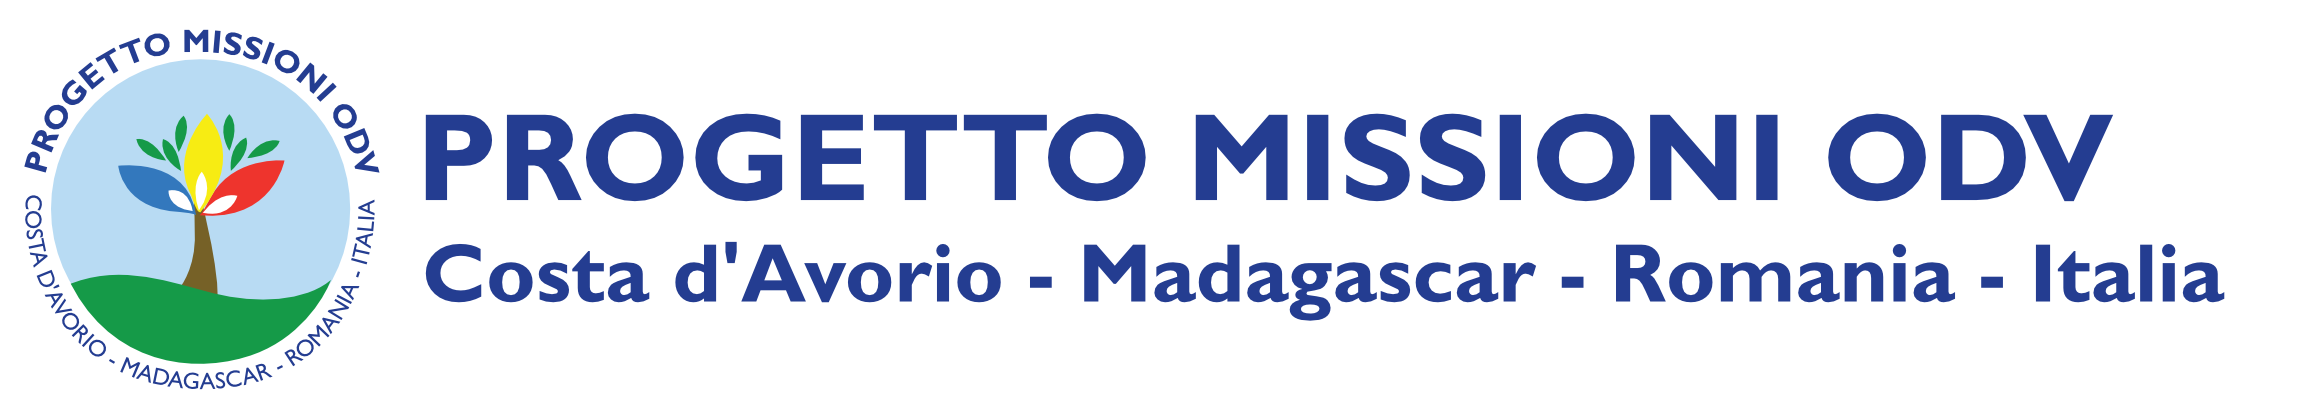 logo Progetto Missioni ODV